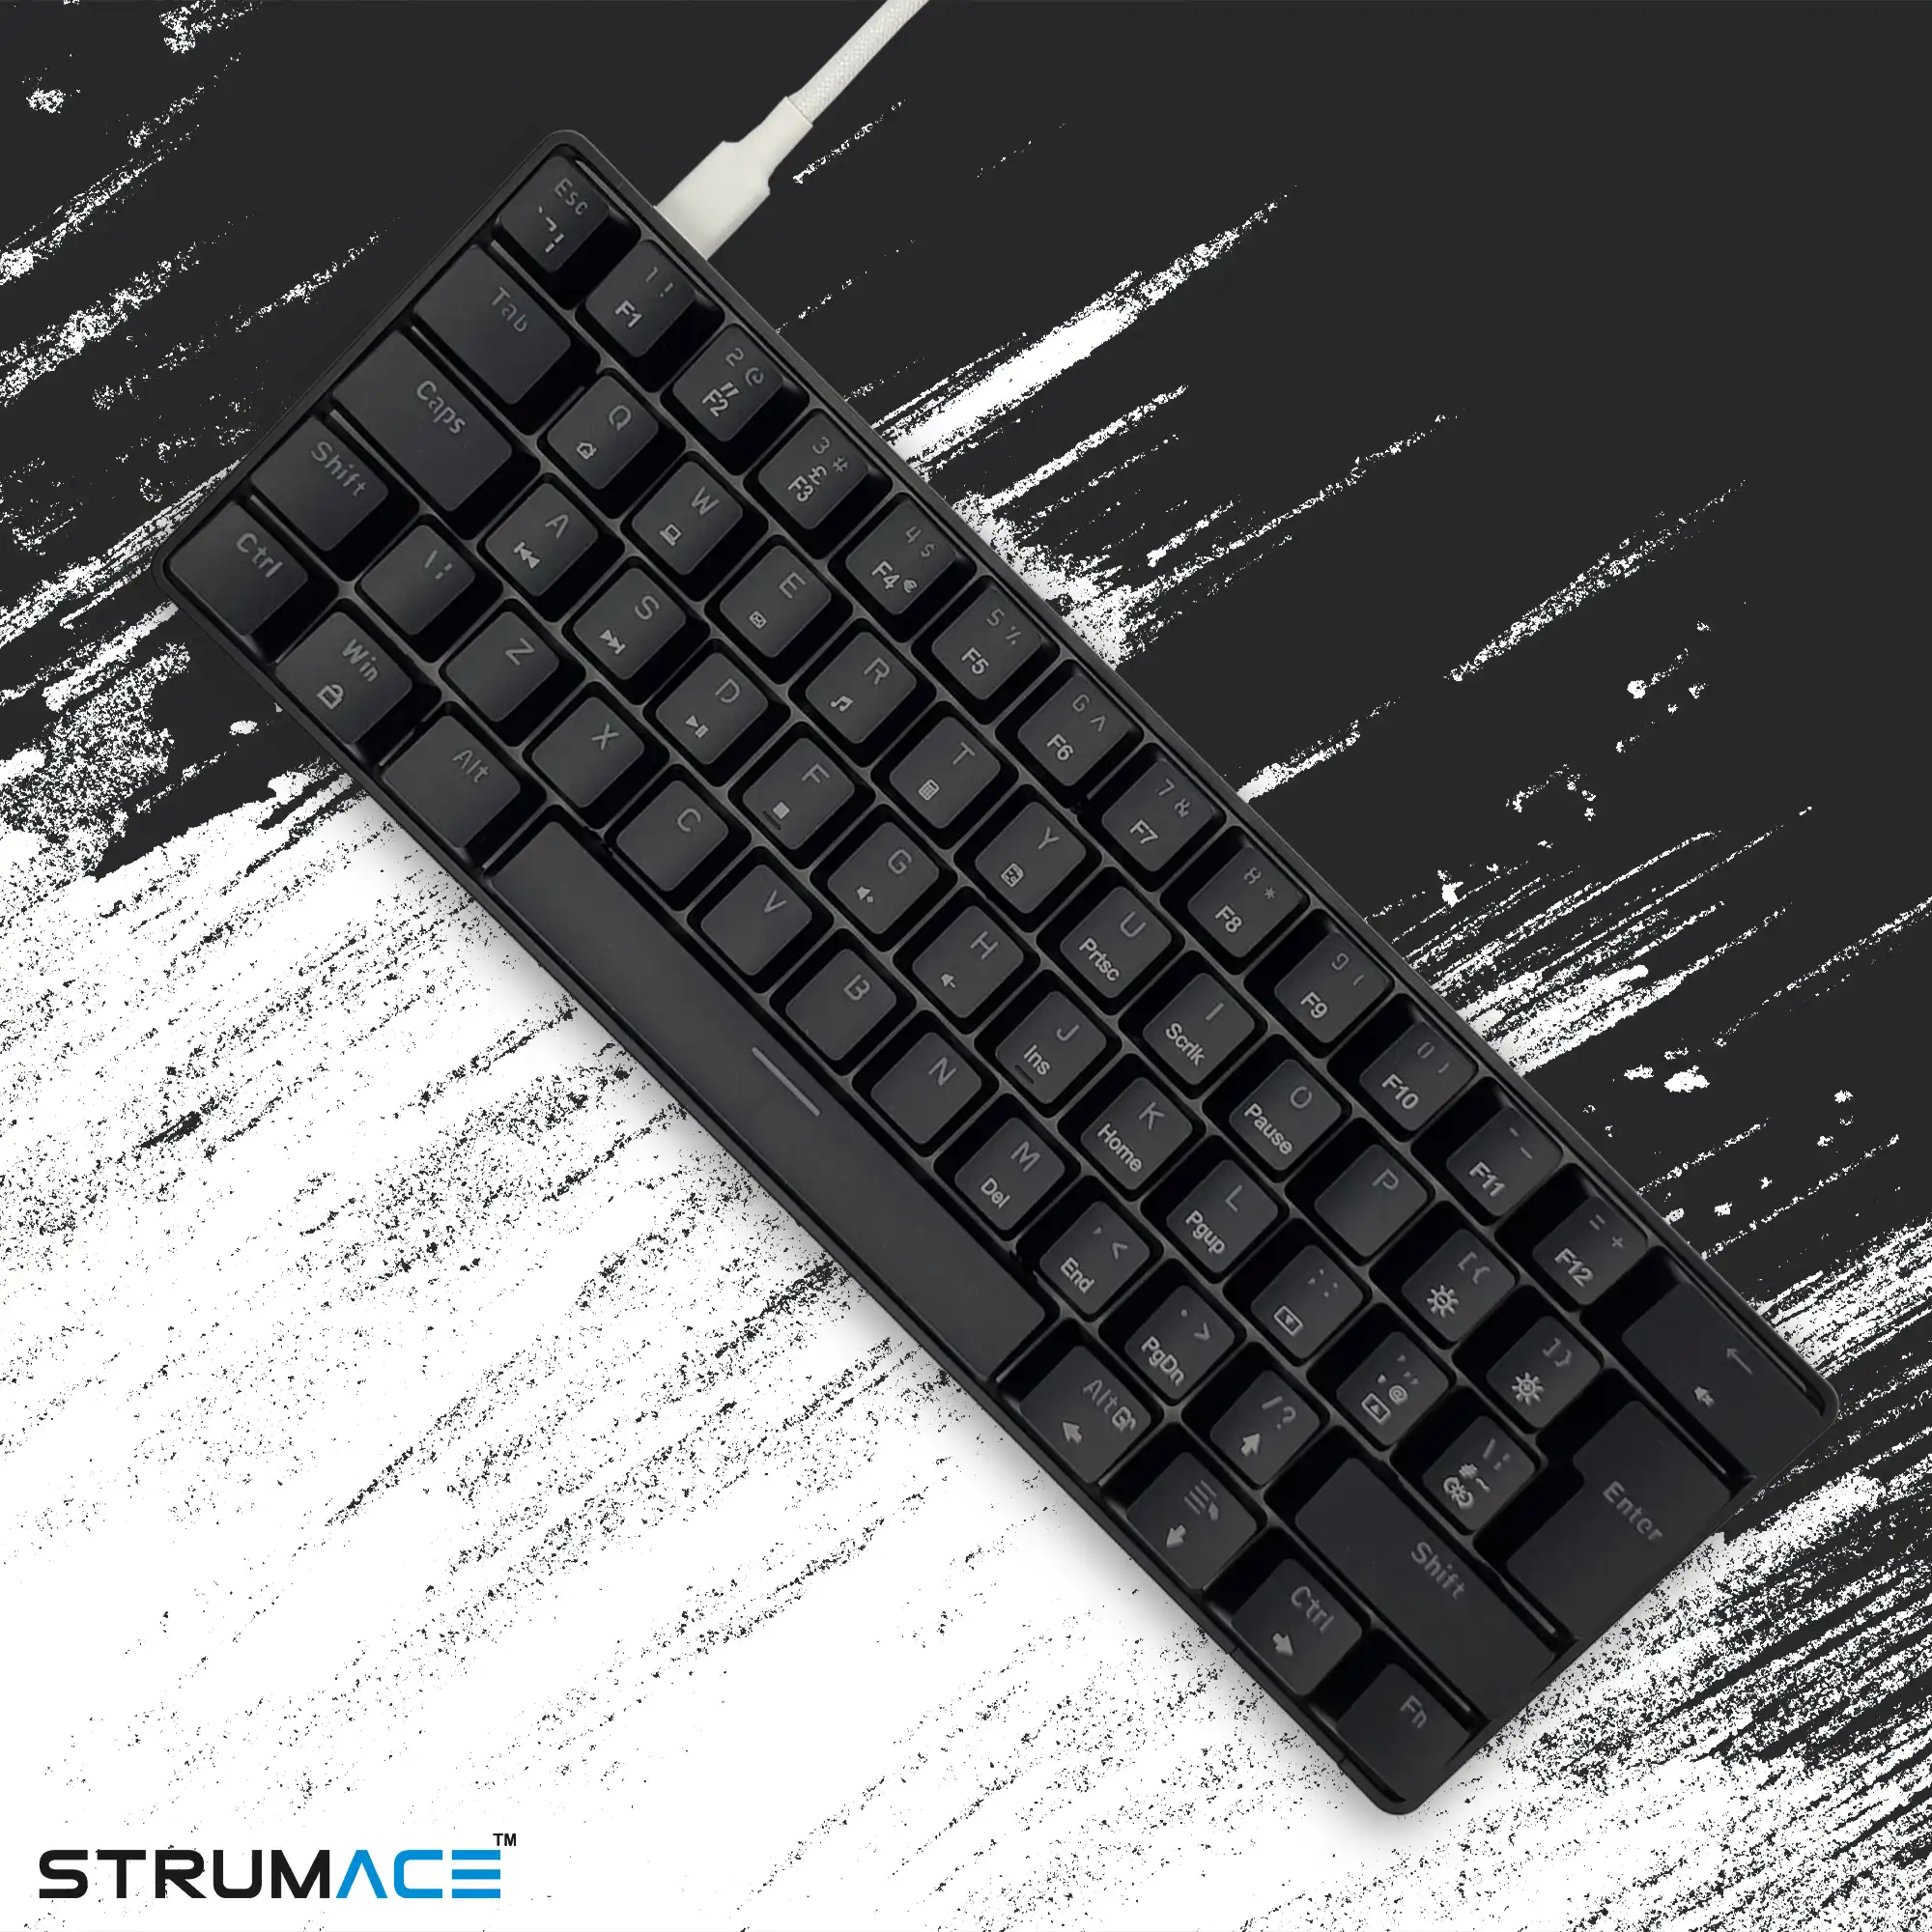 60% RGB Mechanical Gaming Keyboard